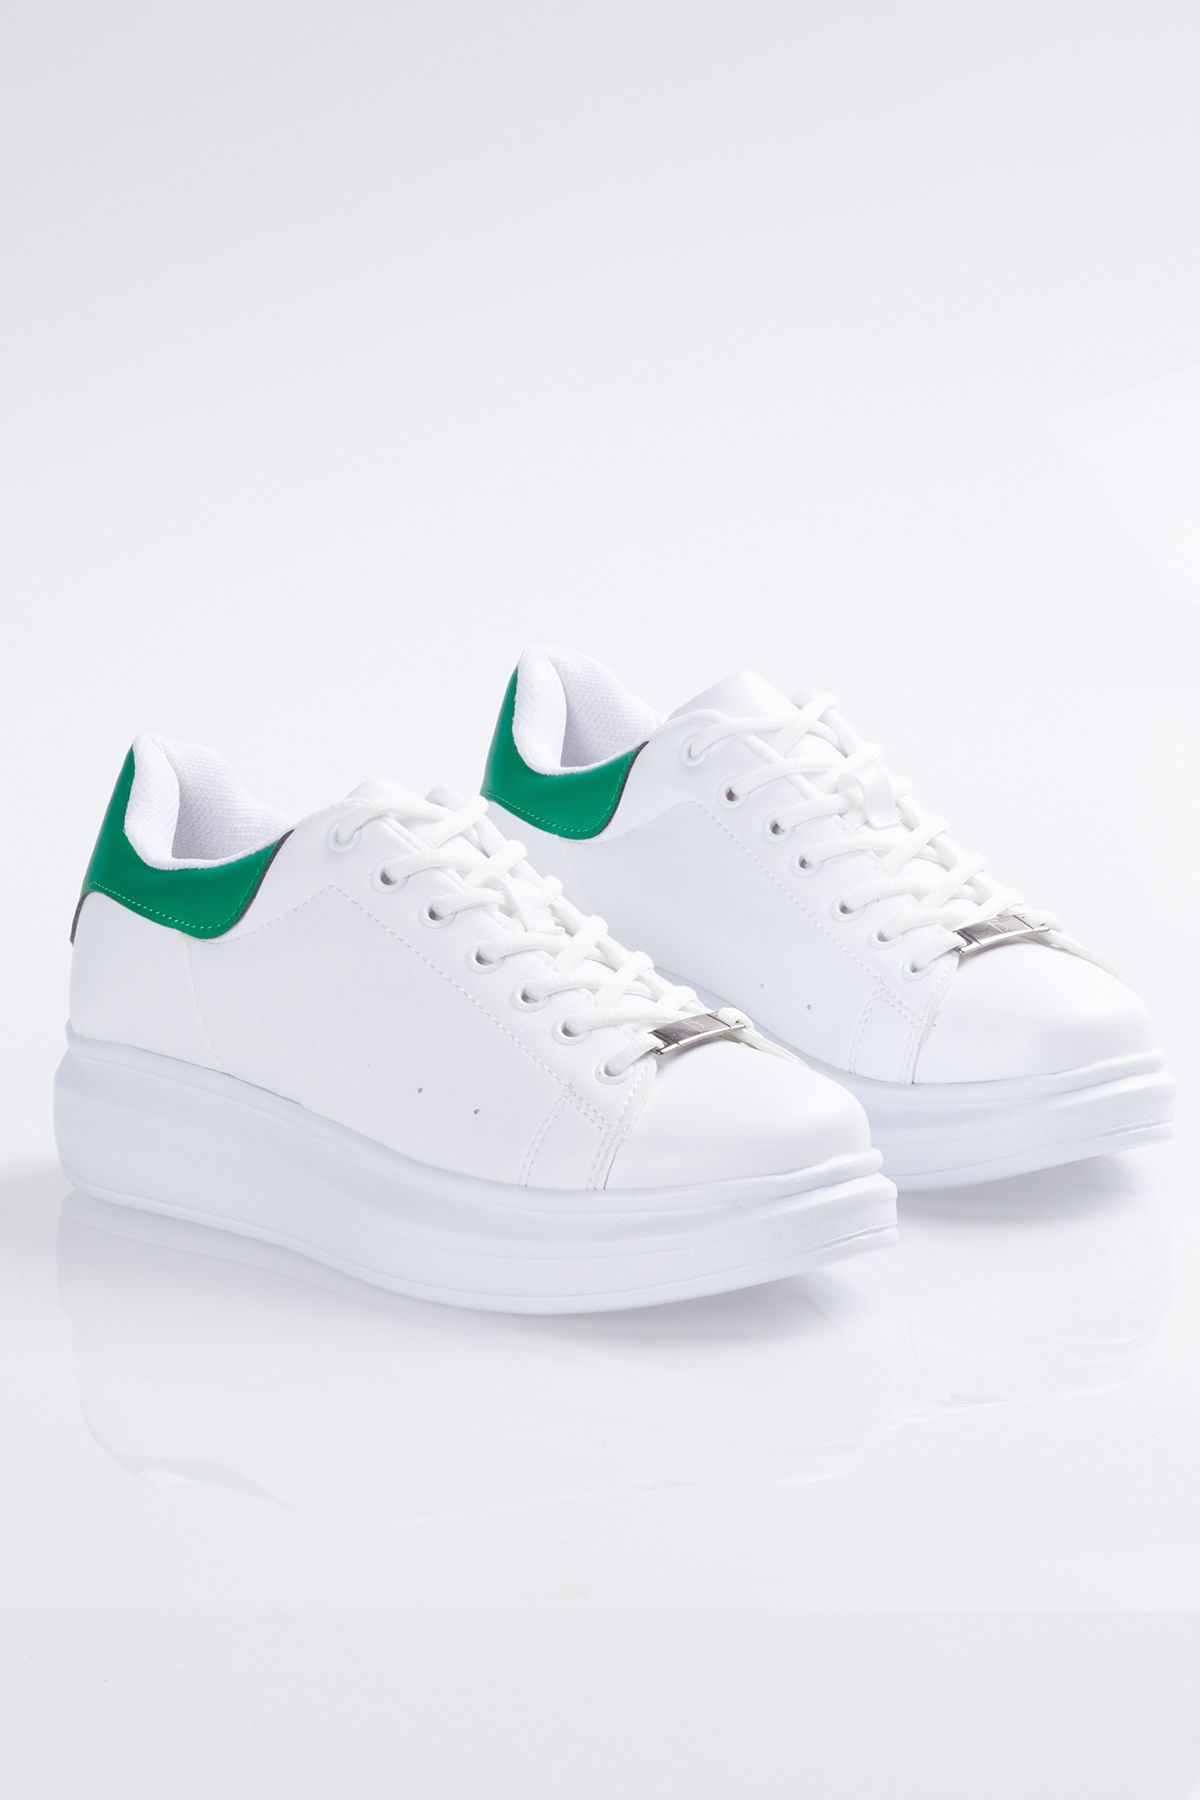 کفش ورزشی داخلی آستر یونیسکس سفید سبز تونی بلک Tonny Black (برند ترکیه)